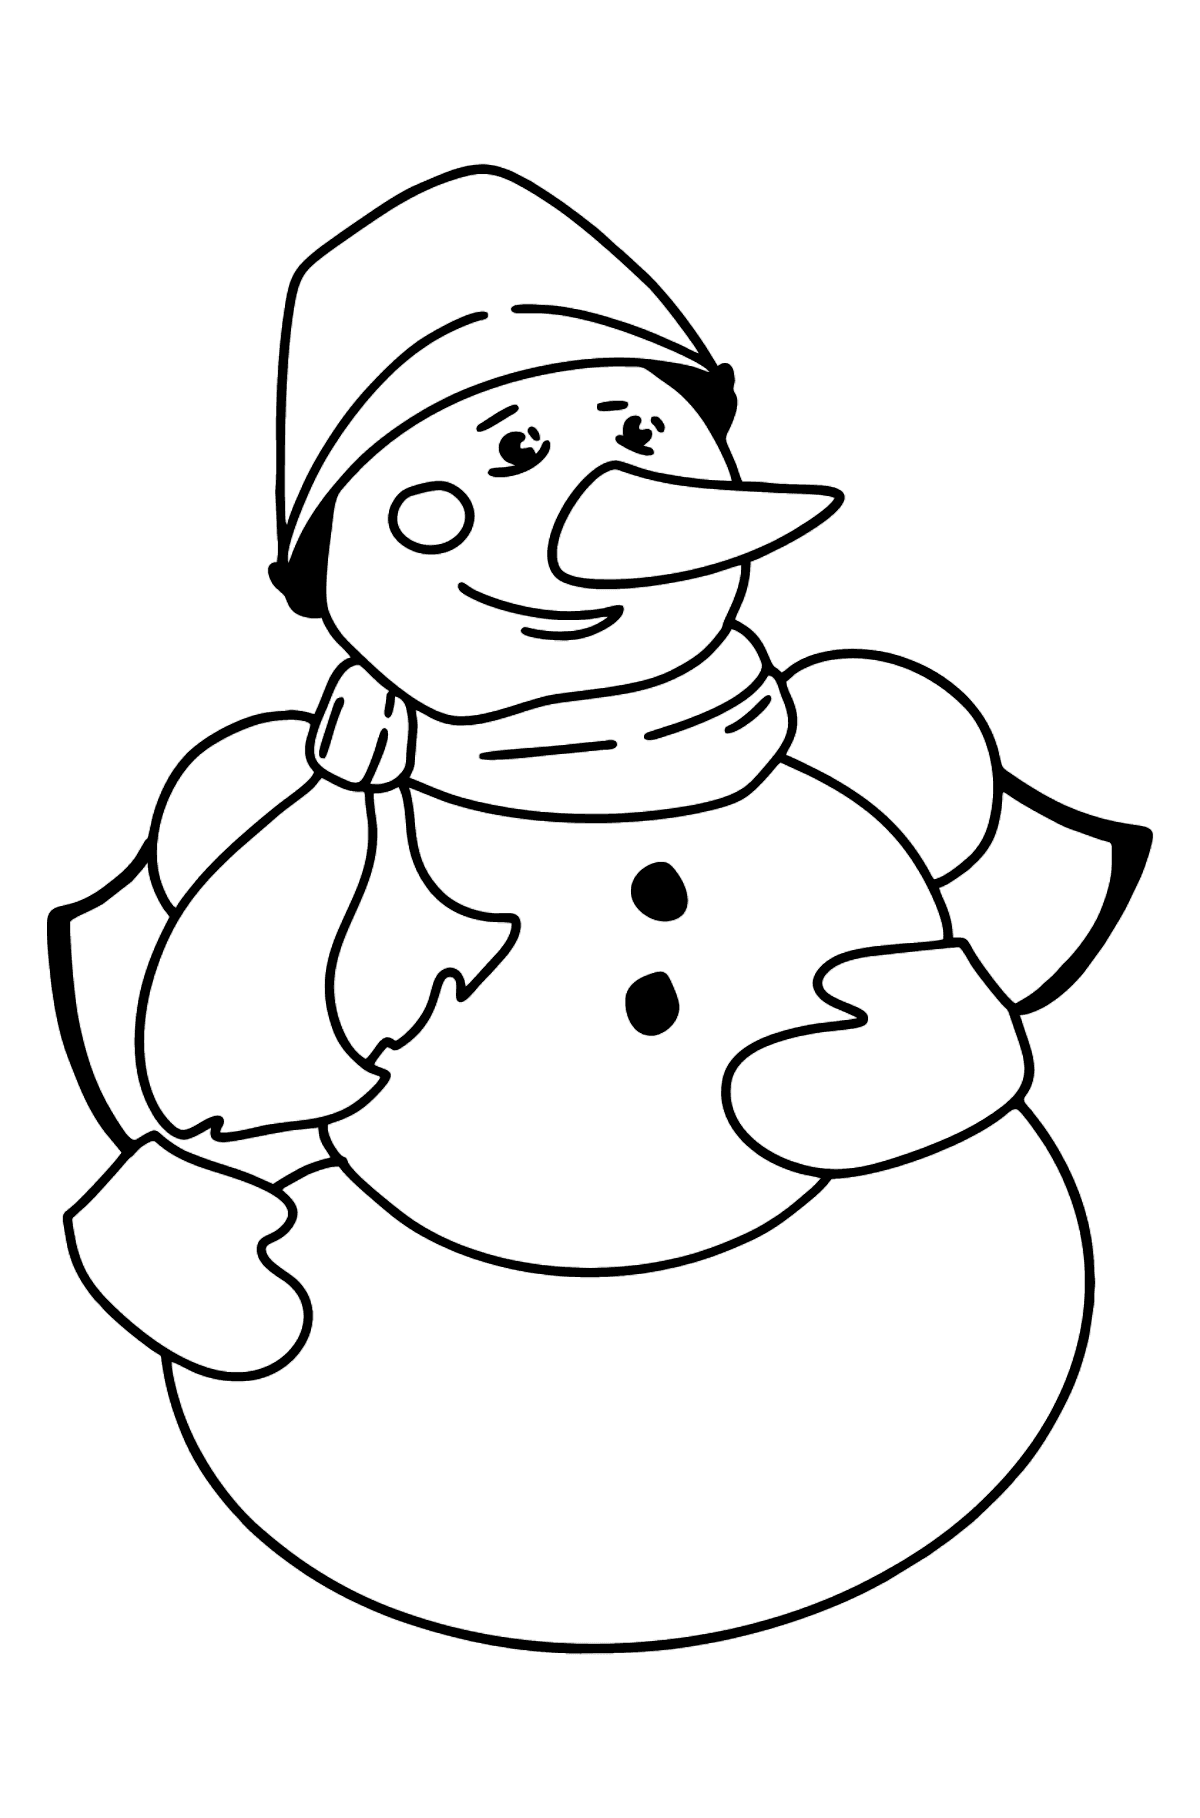 Dibujo de muñeco de nieve para colorear - Dibujos para Colorear para Niños